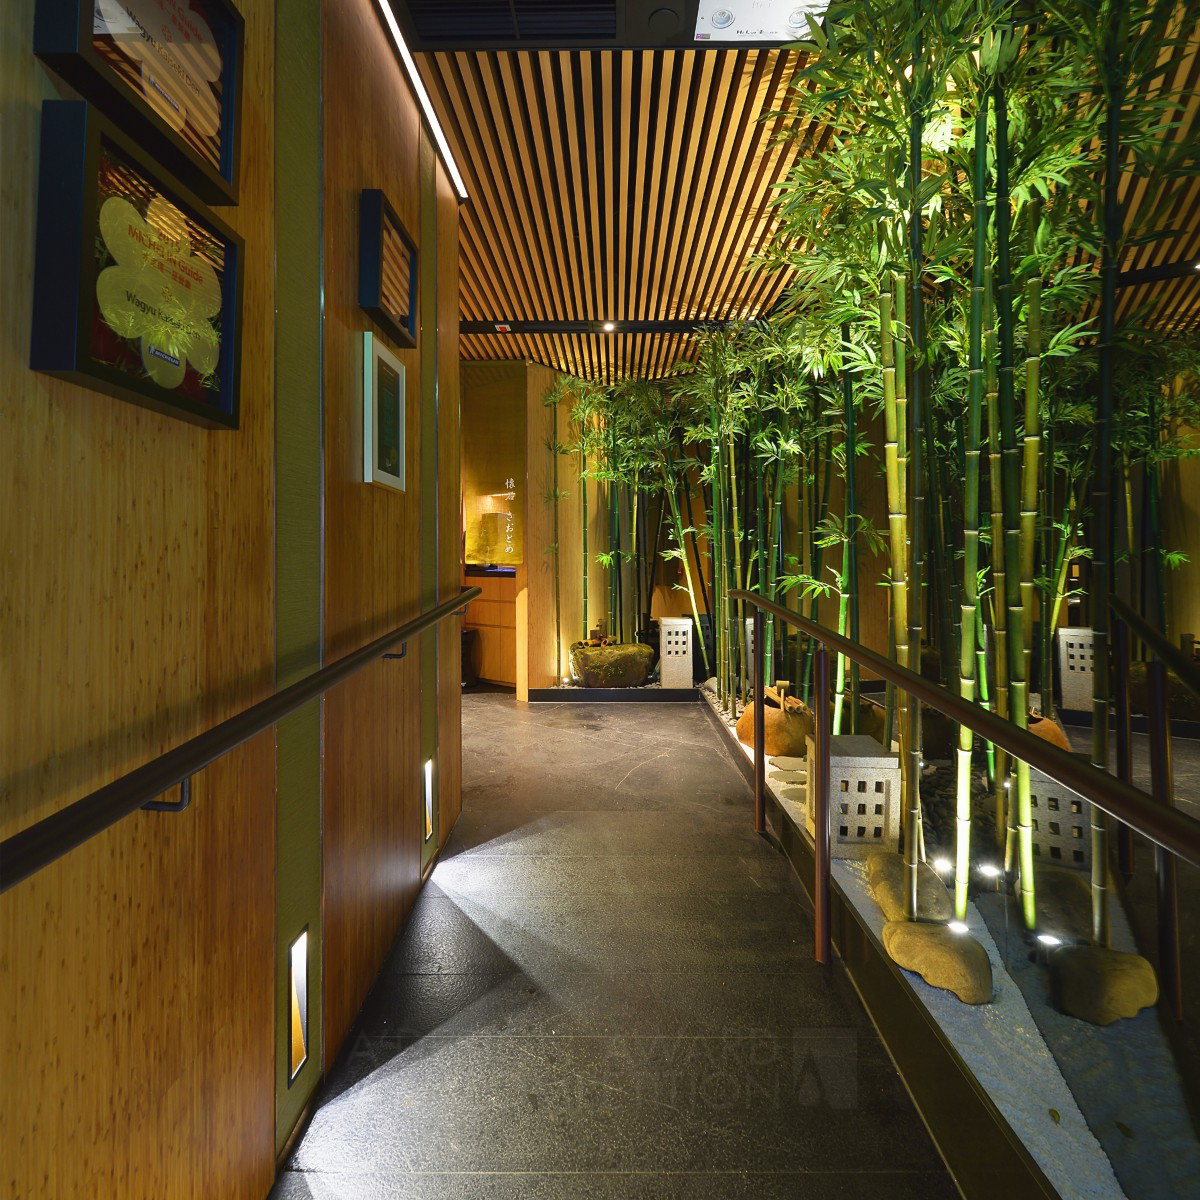 Kaiseki Den Restaurant by Monique Lee Bronze Interior Space and Exhibition Design Award Winner 2018 